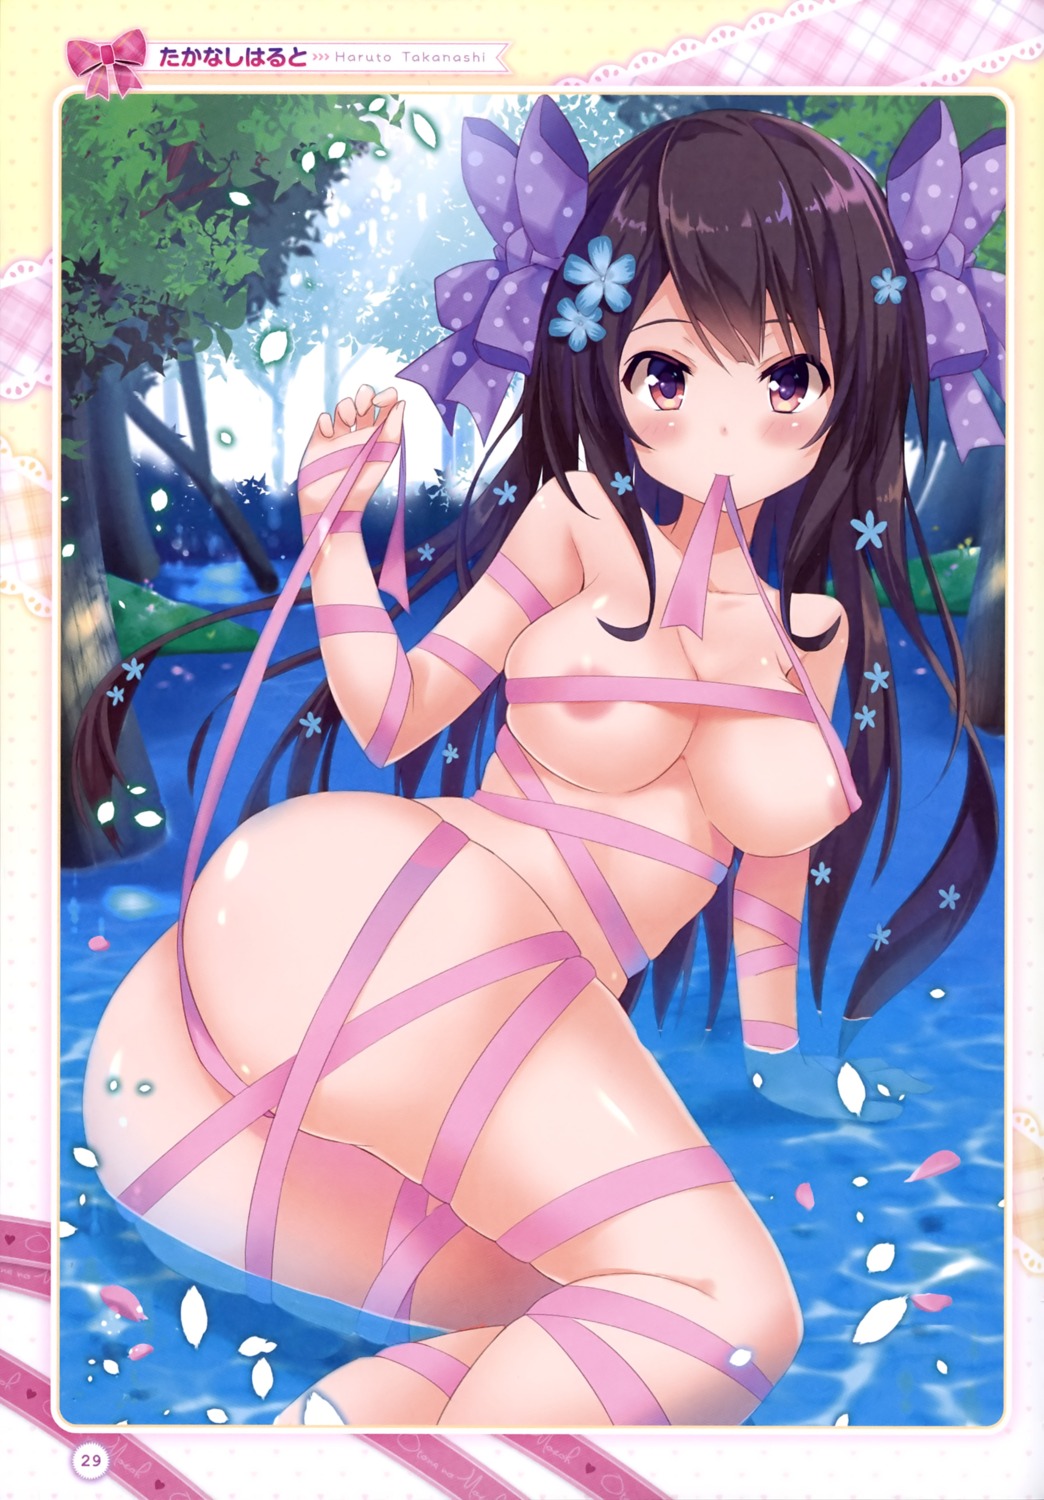 areola ass erect_nipples naked_ribbon takanashi_haruto wet